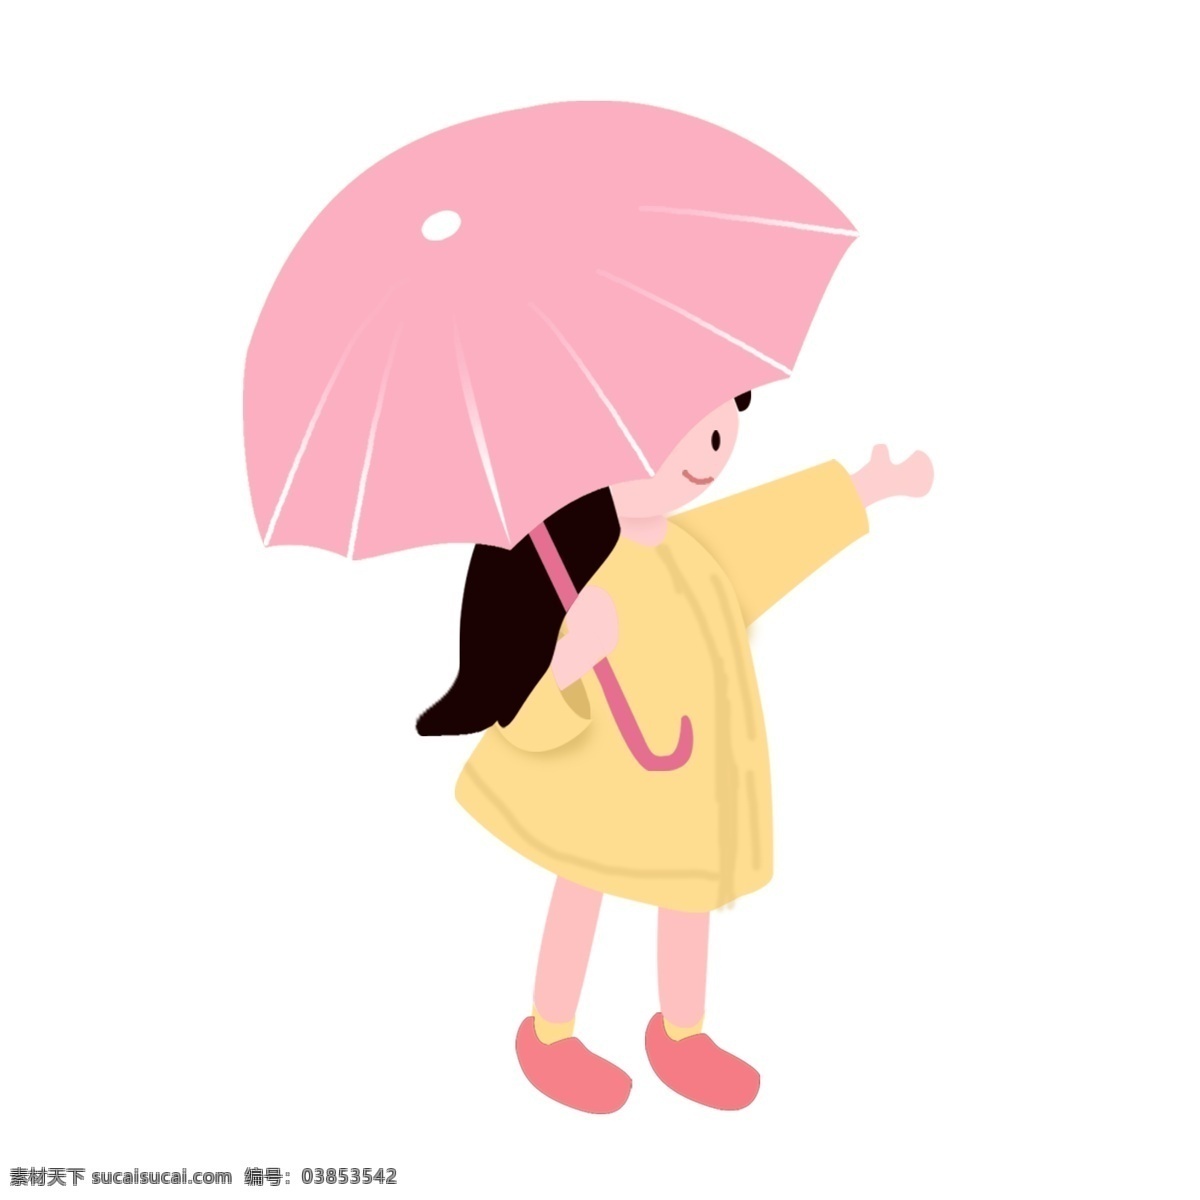 粉红色 雨伞 黄色 衣服 卡通 小人 图案